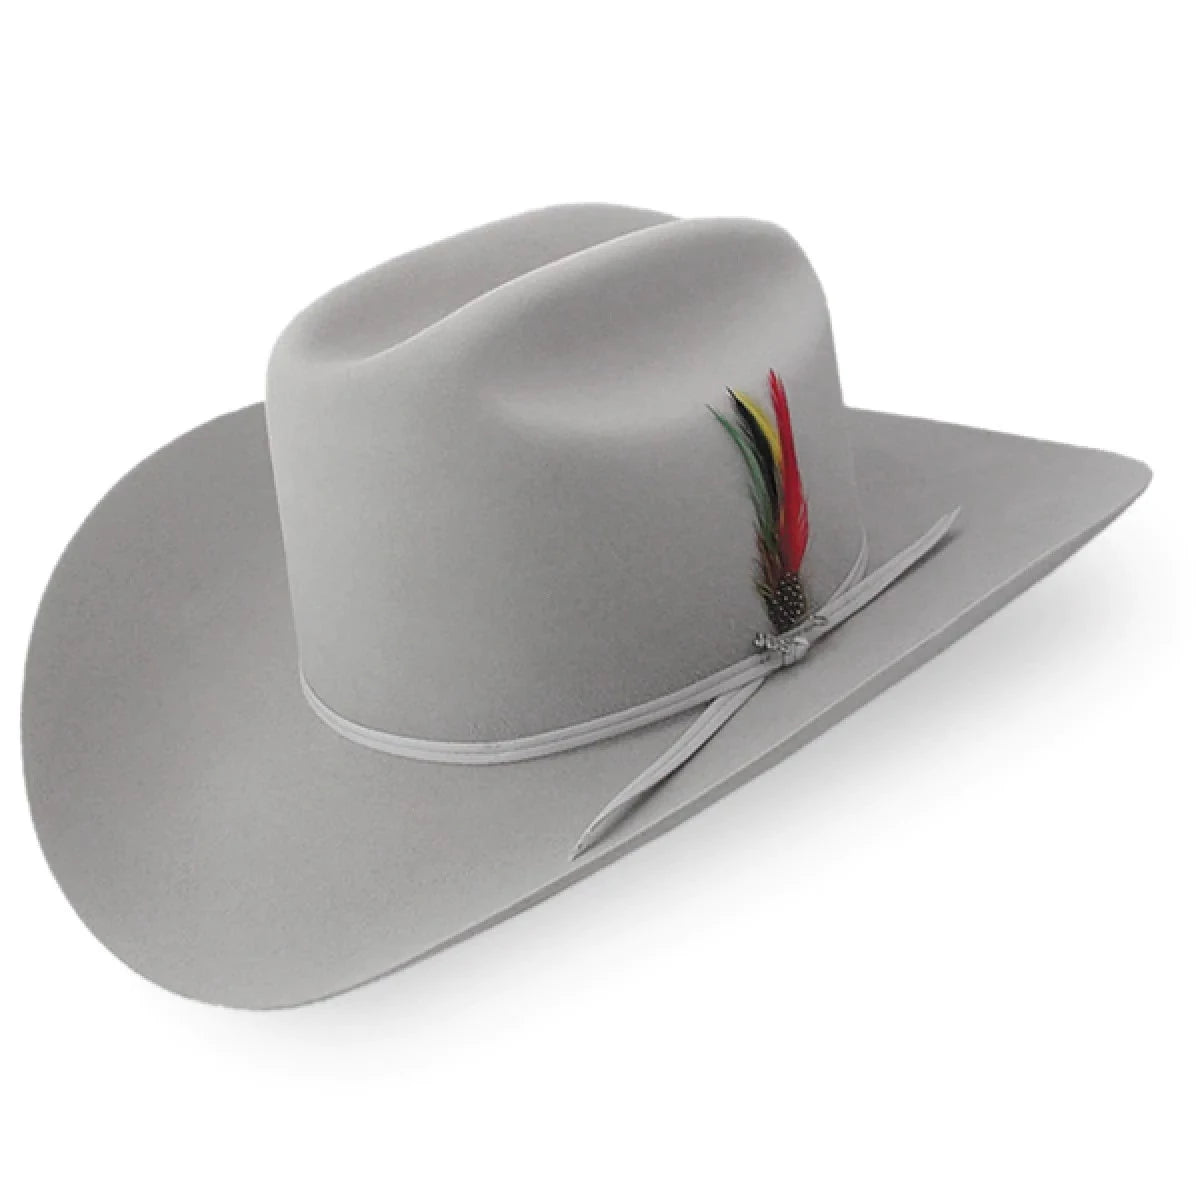 Sombrero estilo cowboy envejecido - Sombrerería Mil Talla S Color Paja  tostada